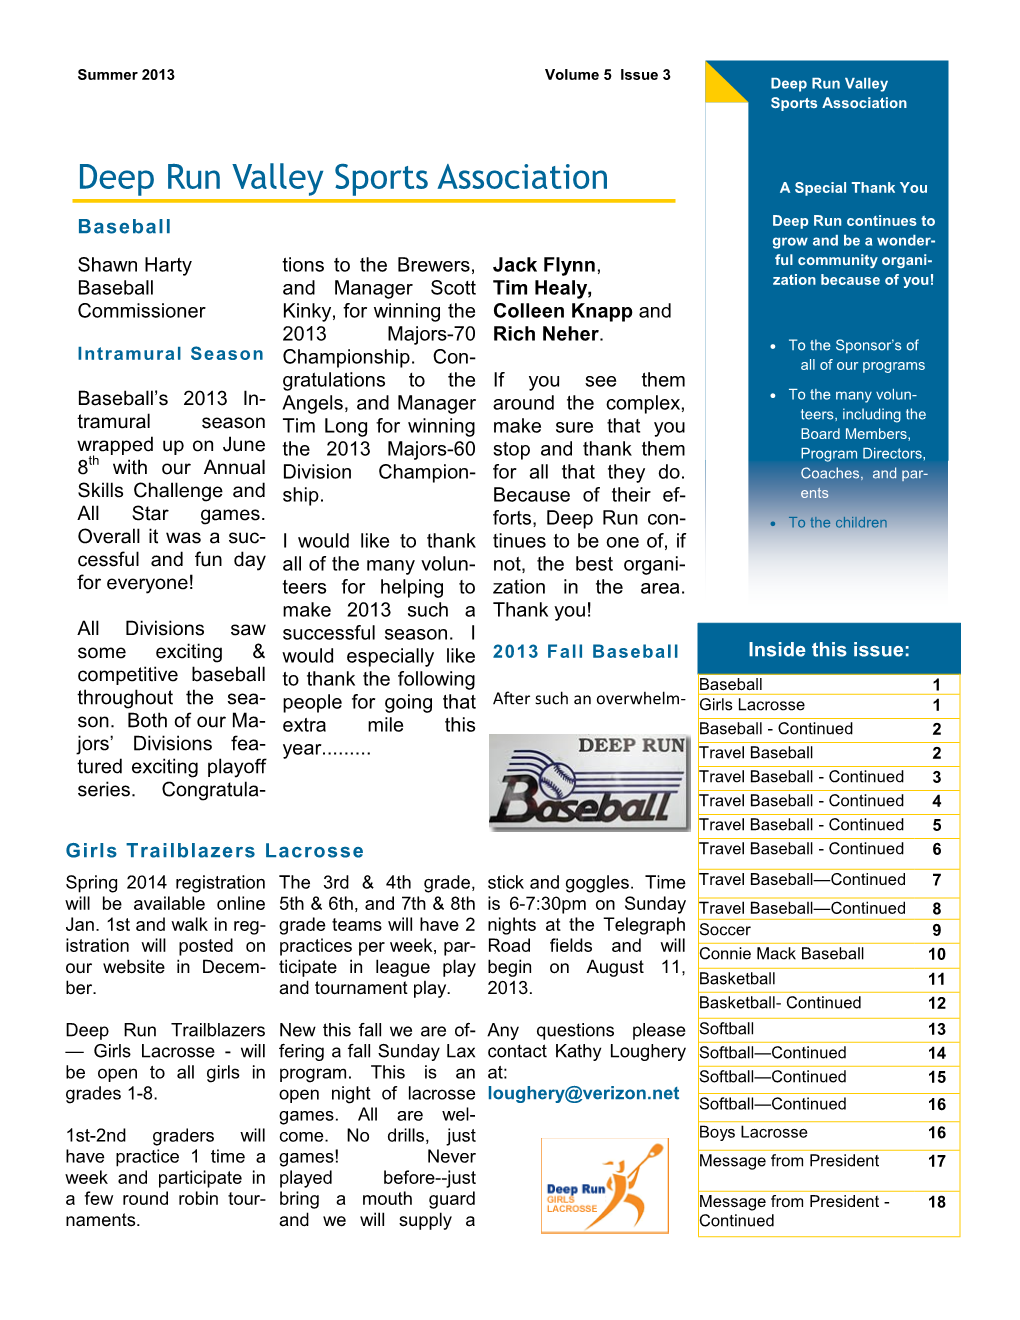 Deep Run Valley Sports Association